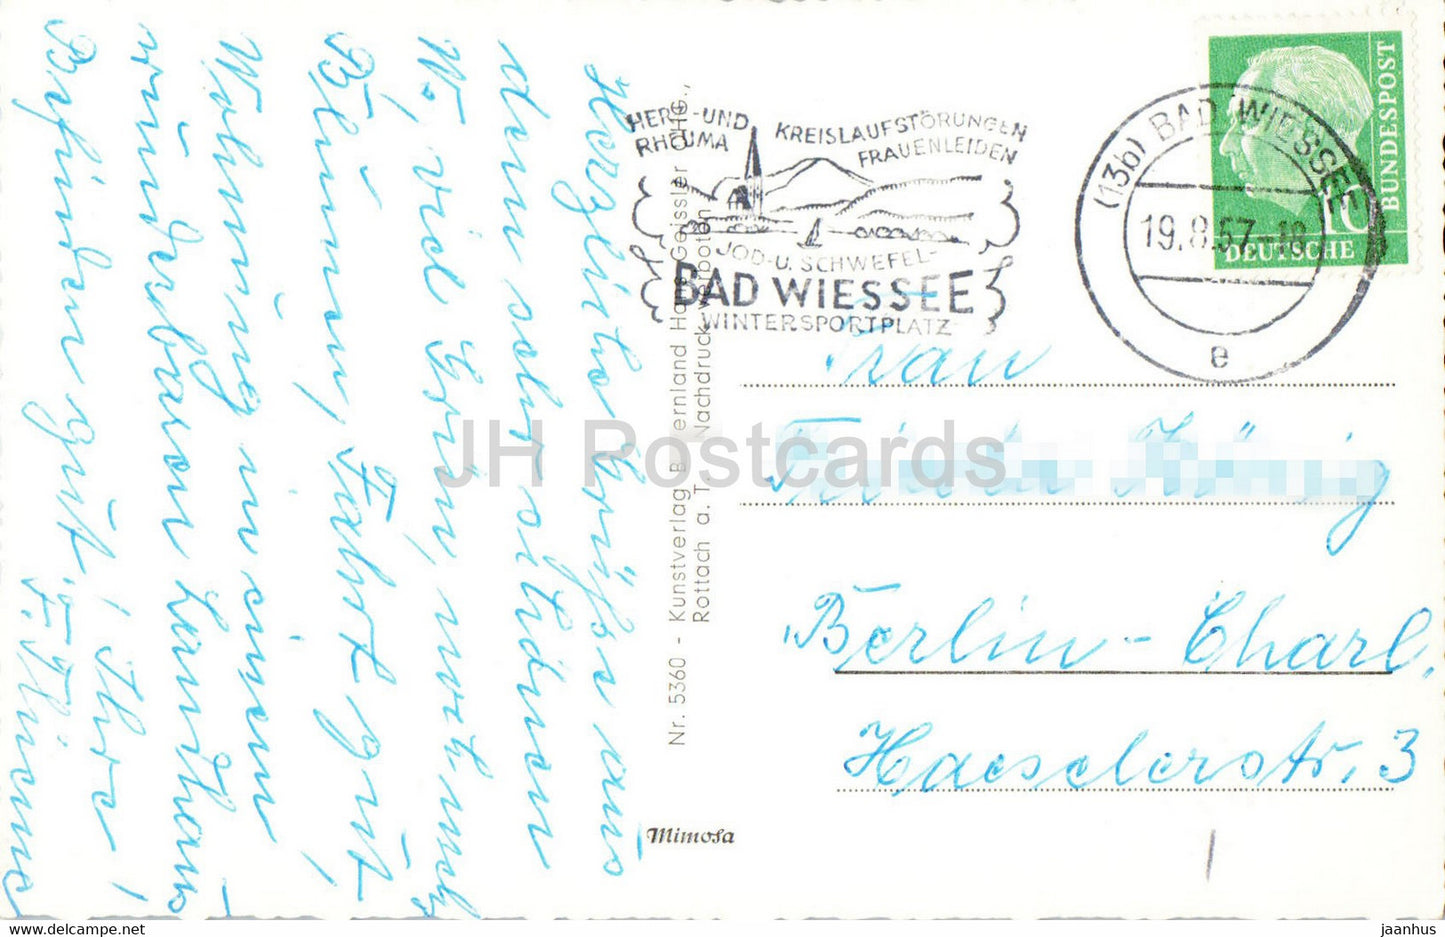 Bad Wiessee - Kurpark - Brunnenbuberl - old postcard - 1957 - Germany - used